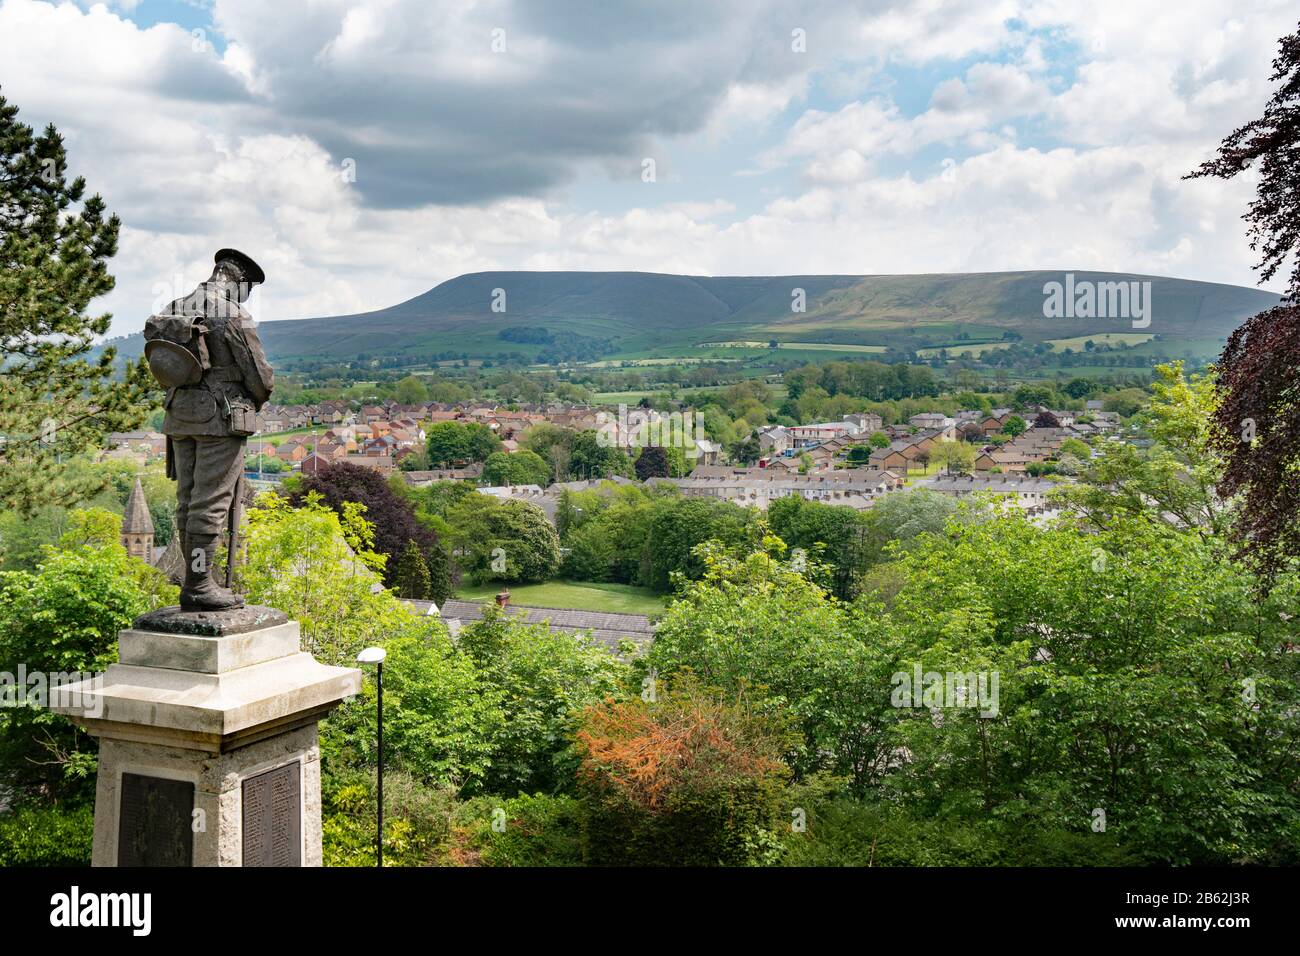 Le mémorial de la guerre des Clitheroe est en face. La statue représente une garde Grenadier dans l'ordre de bataille avec le chapeau, en babouant sa tête, avec la colline Pendle au loin. Banque D'Images